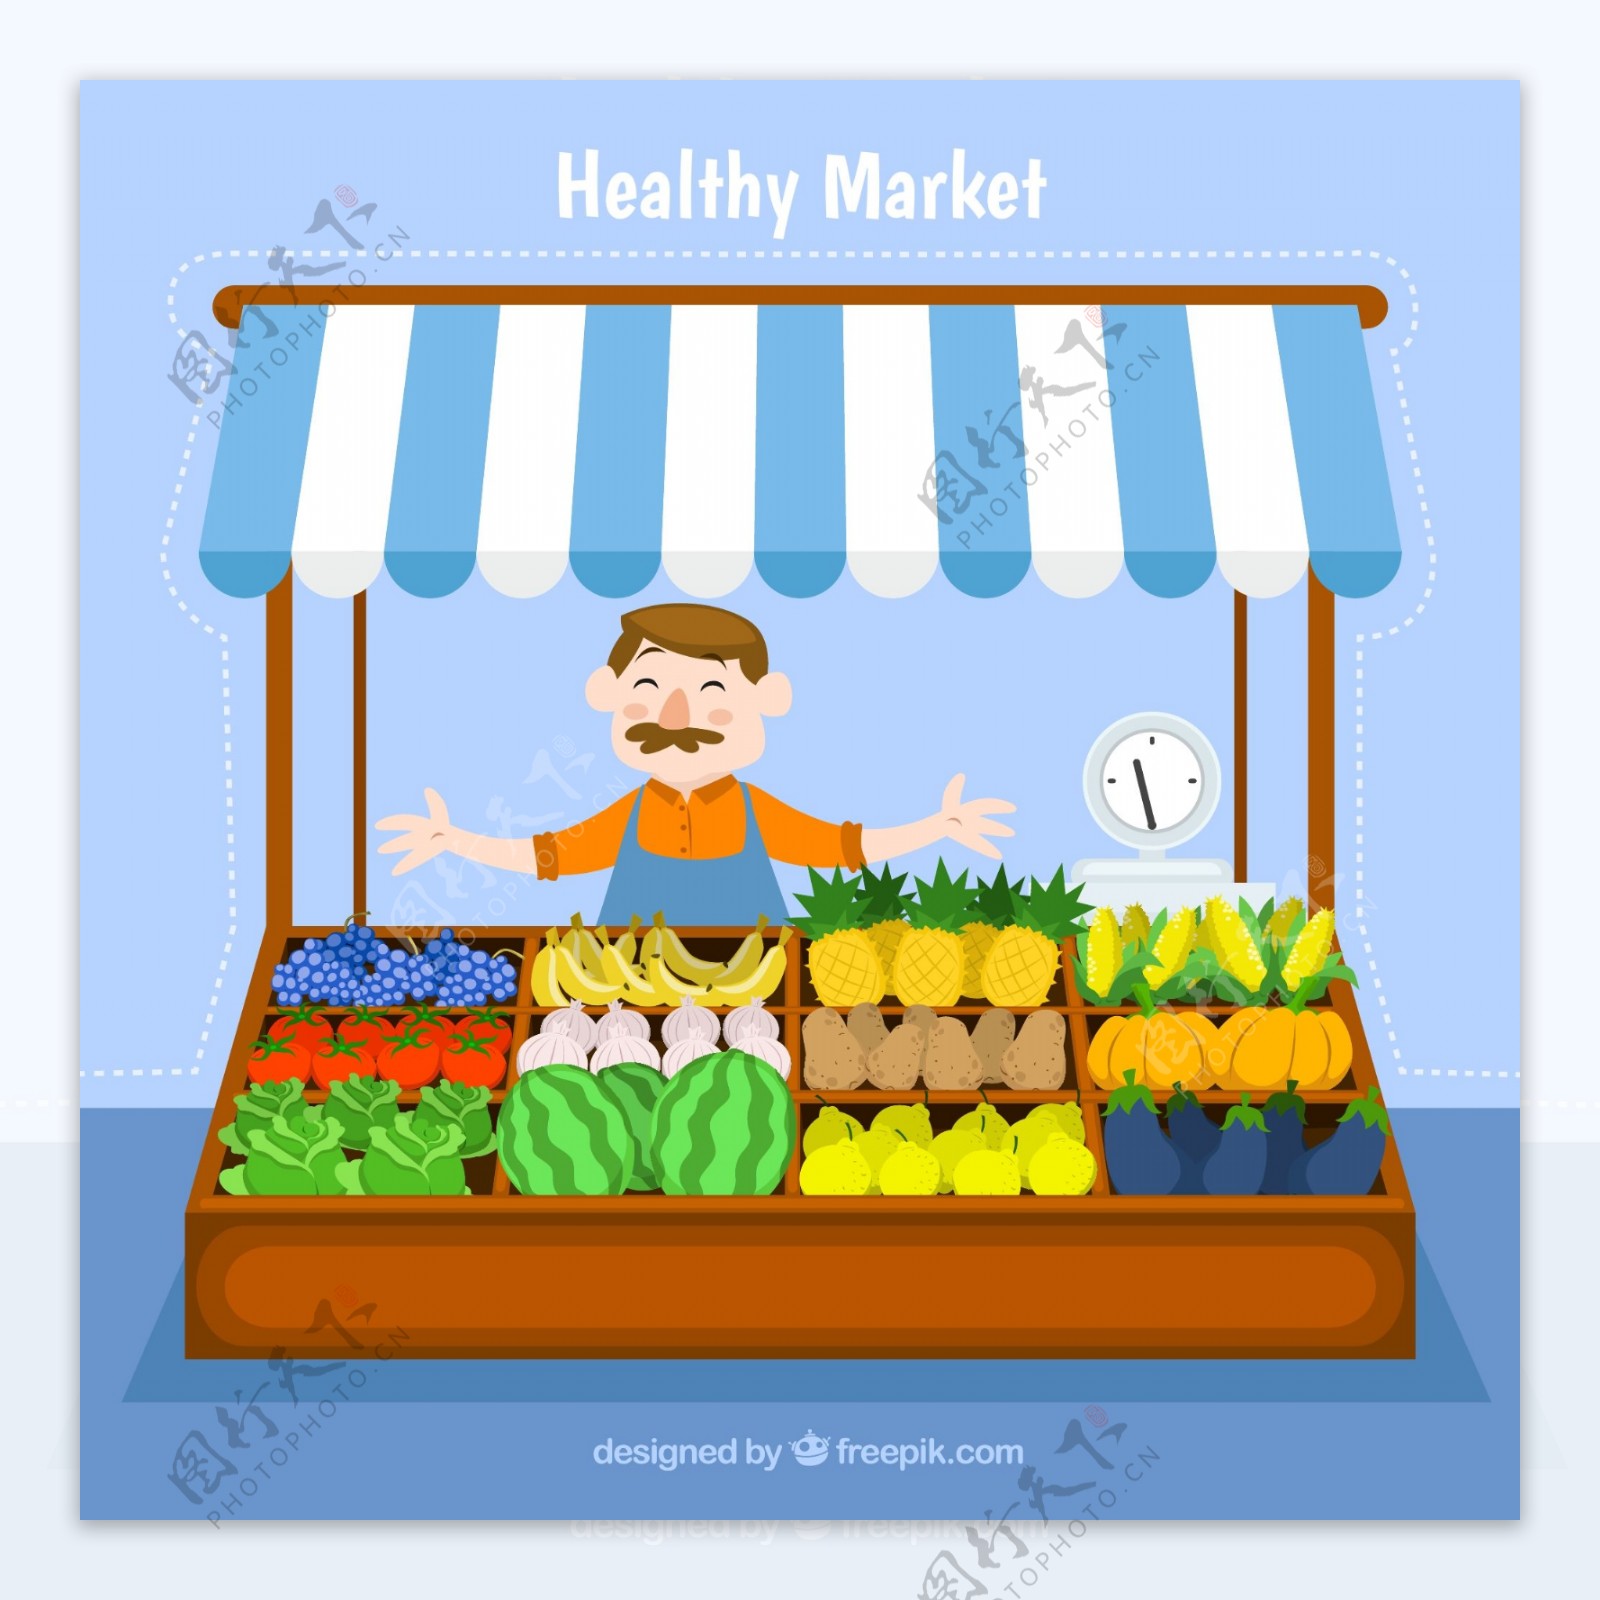 卖水果蔬菜的小摊矢量素材图片